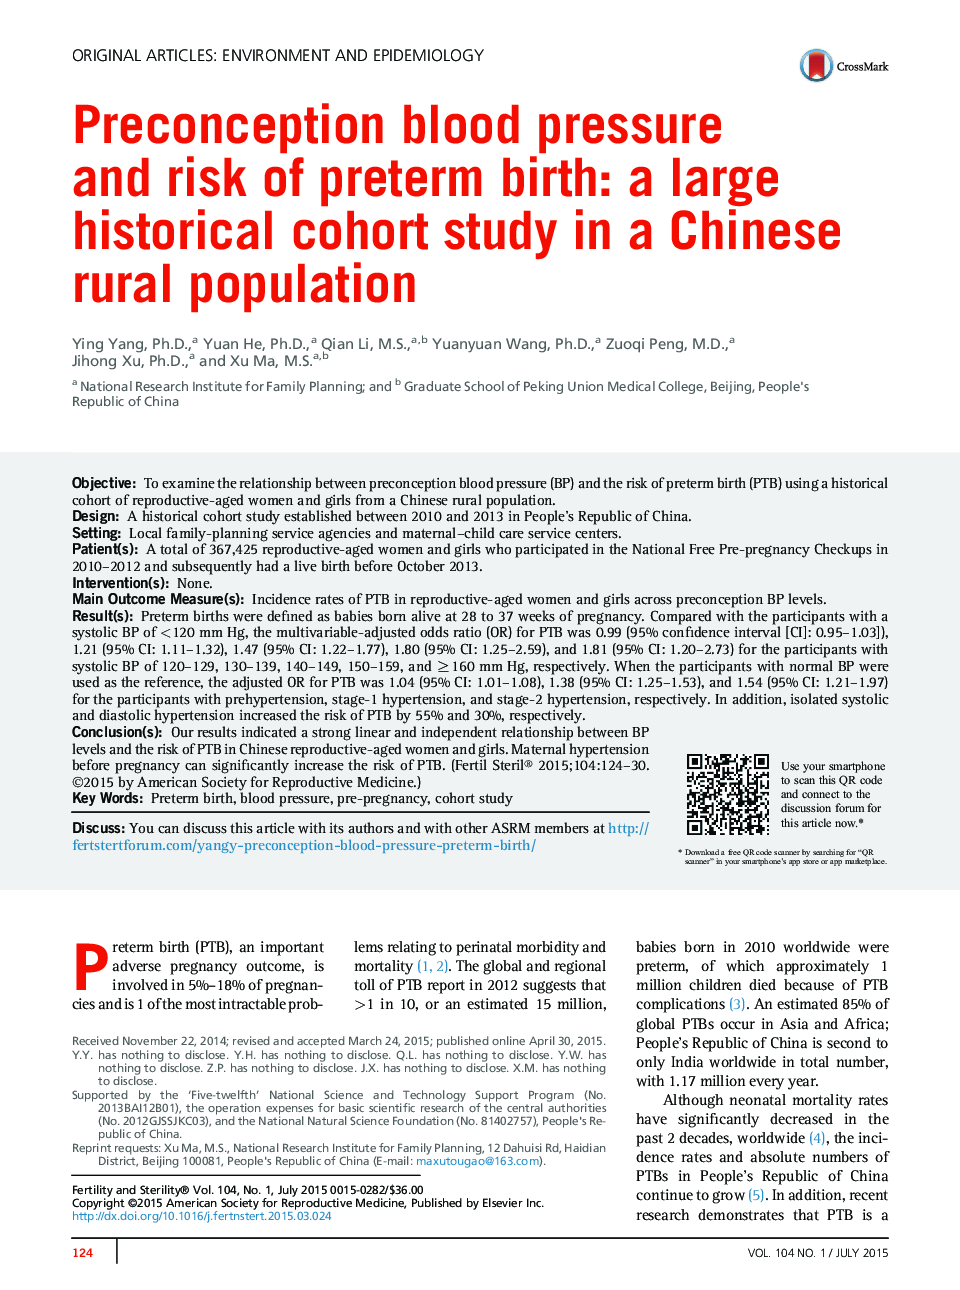 فشار خون پیشگیرانه و خطر زایمان زودرس: یک مطالعه کوهورت تاریخی بزرگ در جمعیت روستایی چینی است 